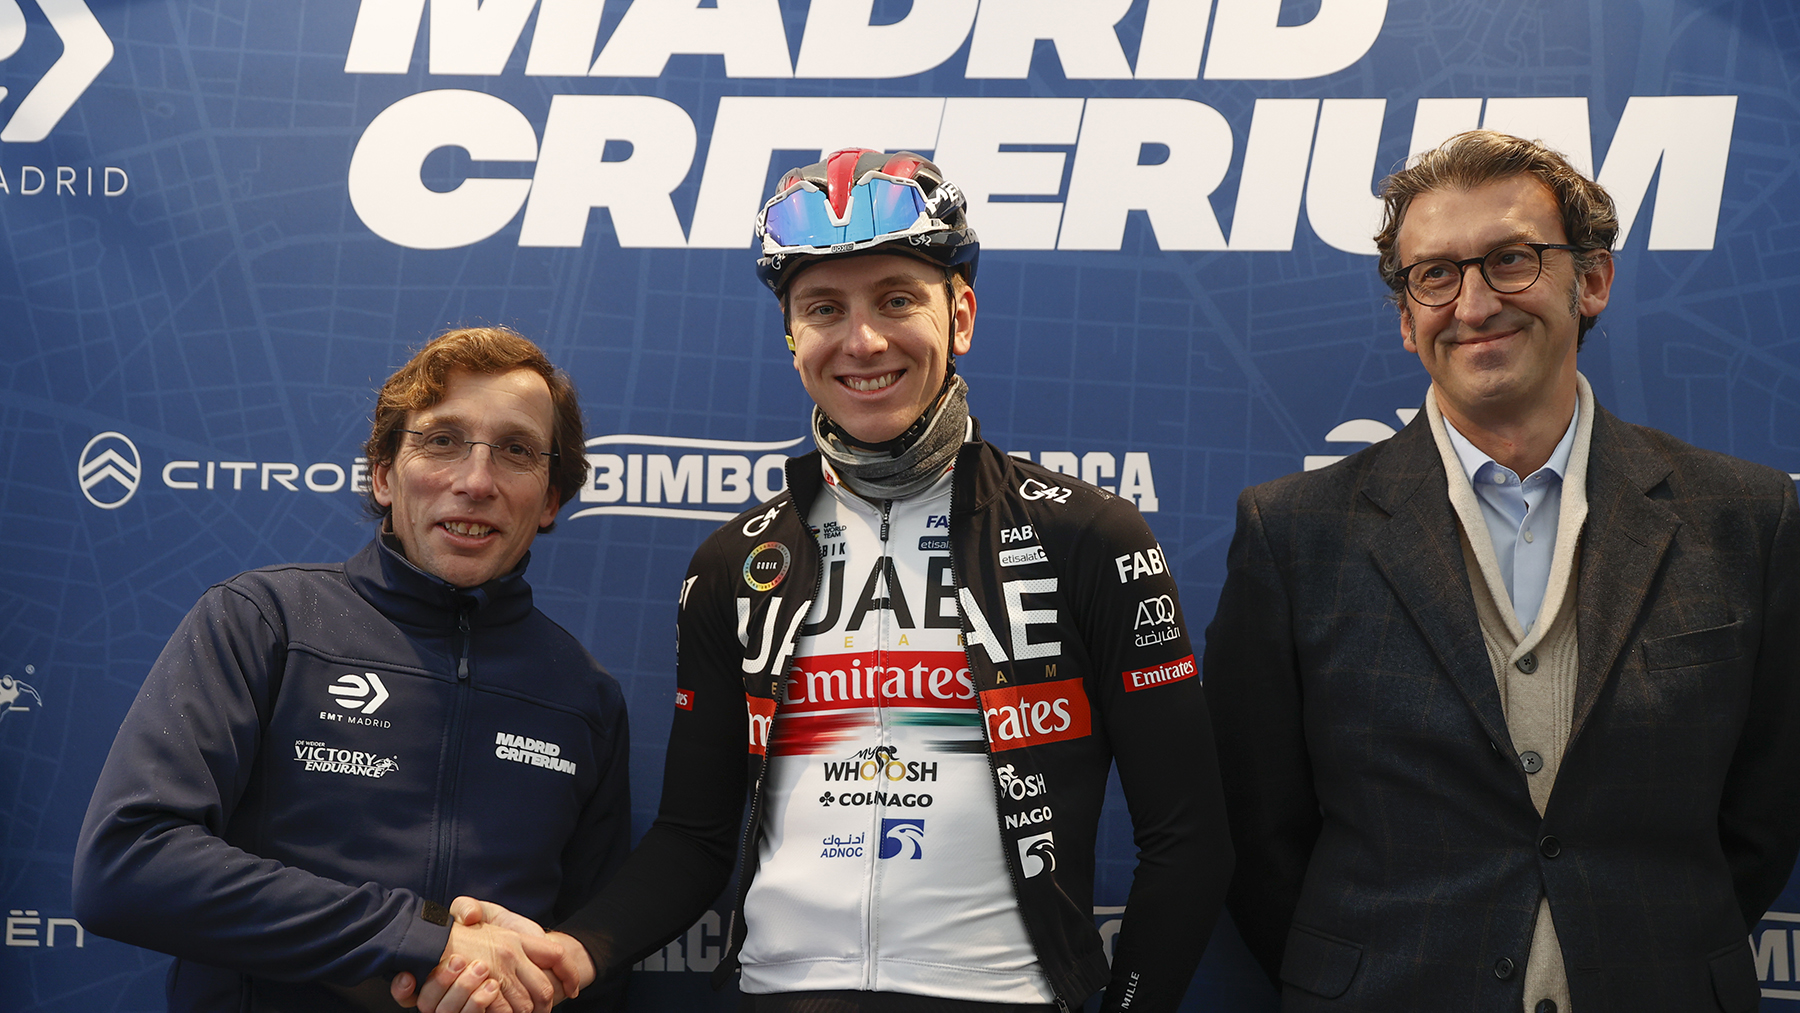 El ciclista esloveno Tadej Pogačar saluda al alcalde de Madrid José Luis Martínez Almeida, durante el Criterium ciclista internacional de Madrid.